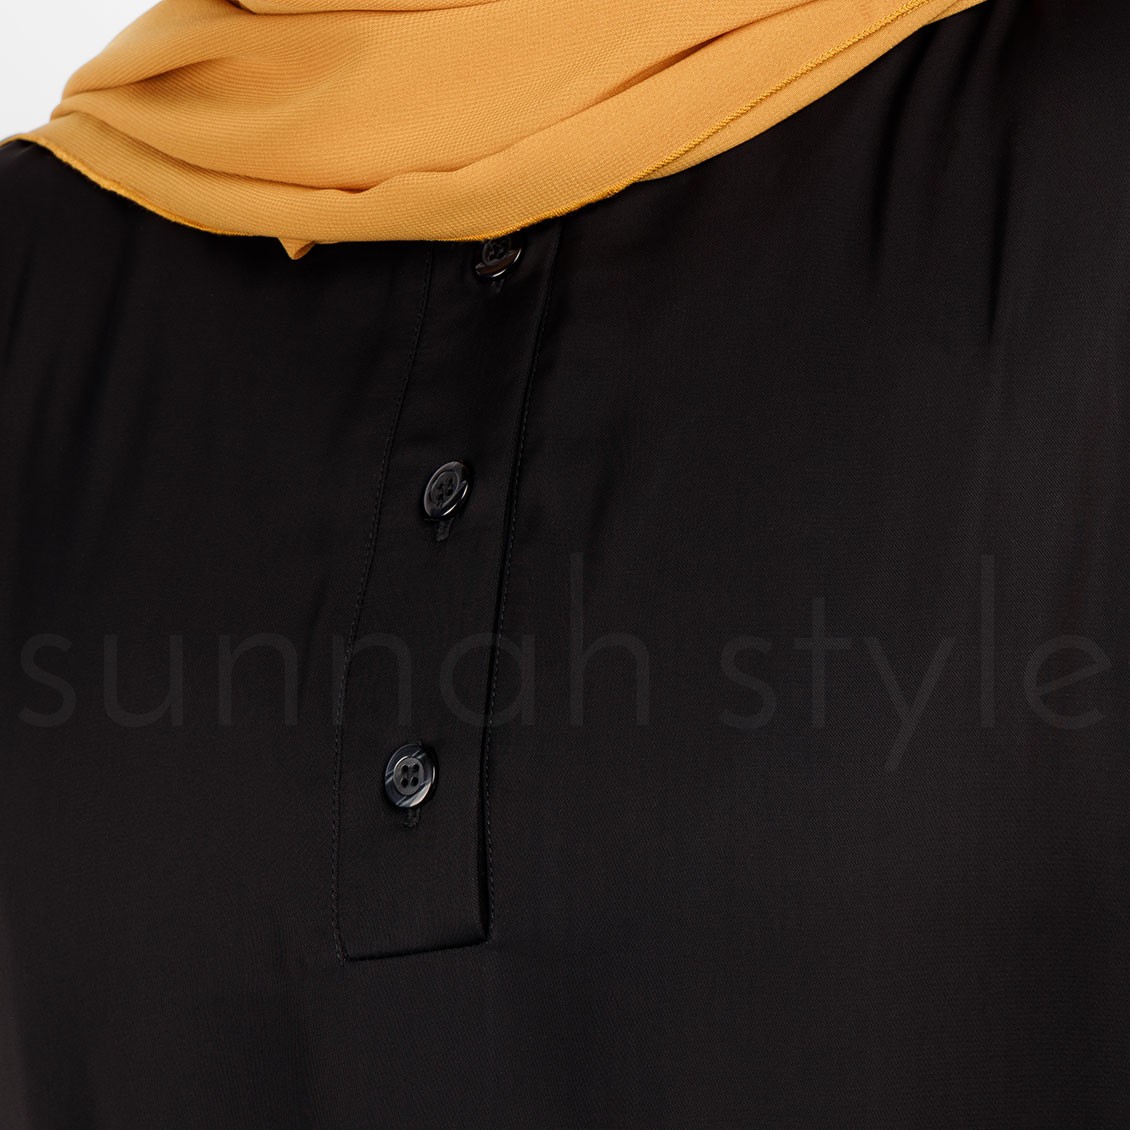 Sunnah Style Pearl Button Cuff Abaya Black